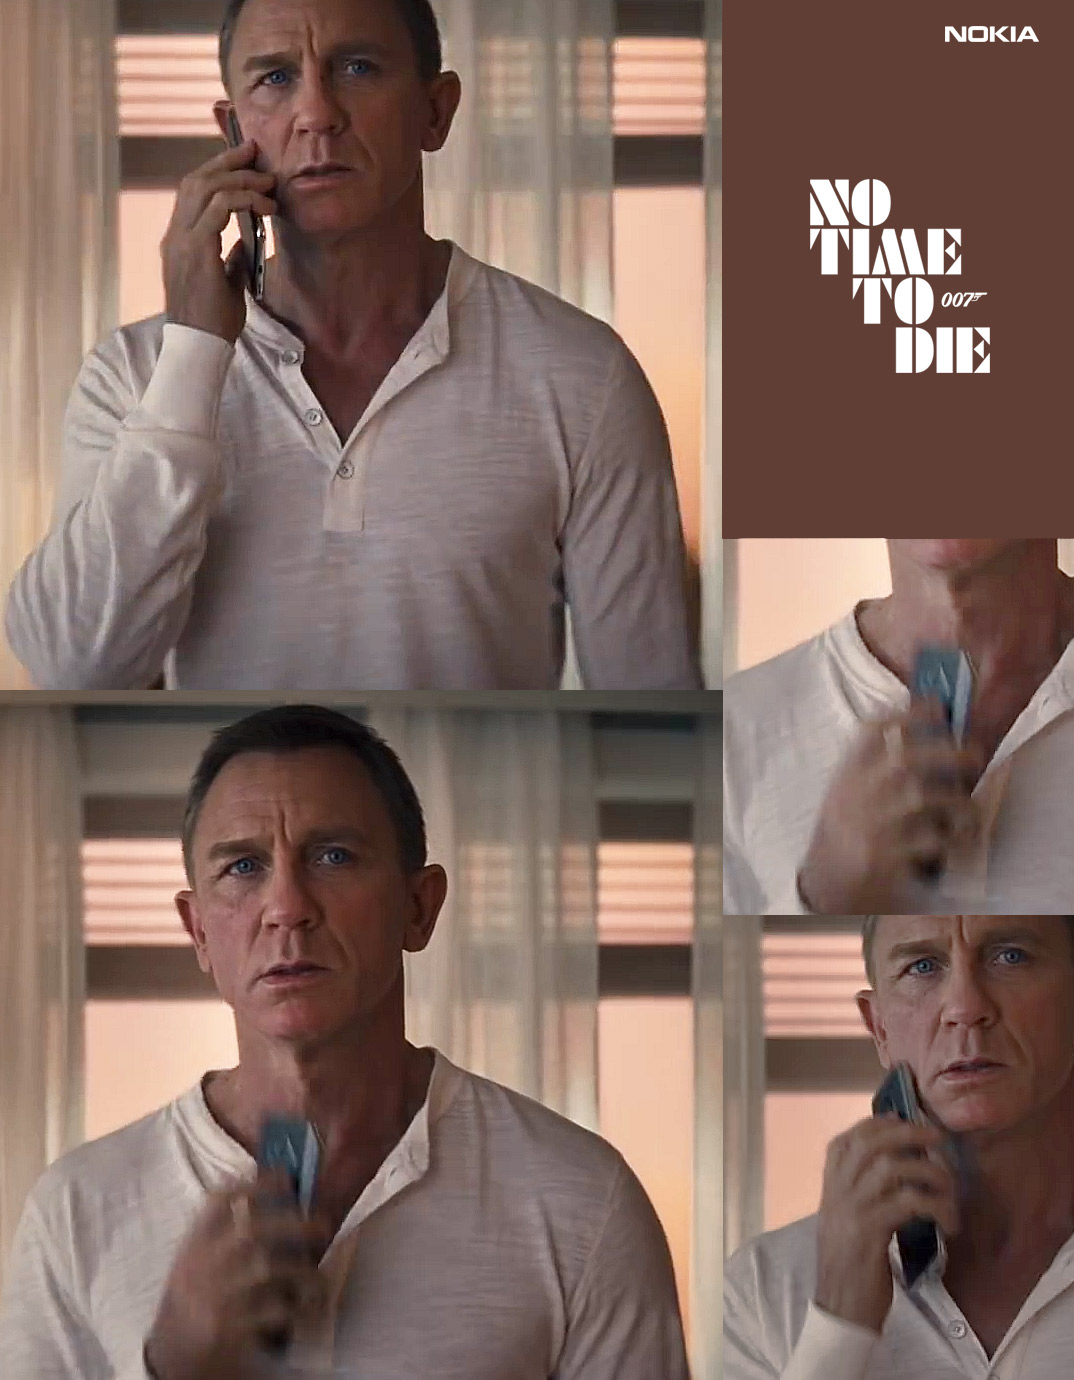 Nokia 8.2 xuất hiện
trong trailer sắp ra mắt của phim Điệp Viên 007:
''No Time To Die''